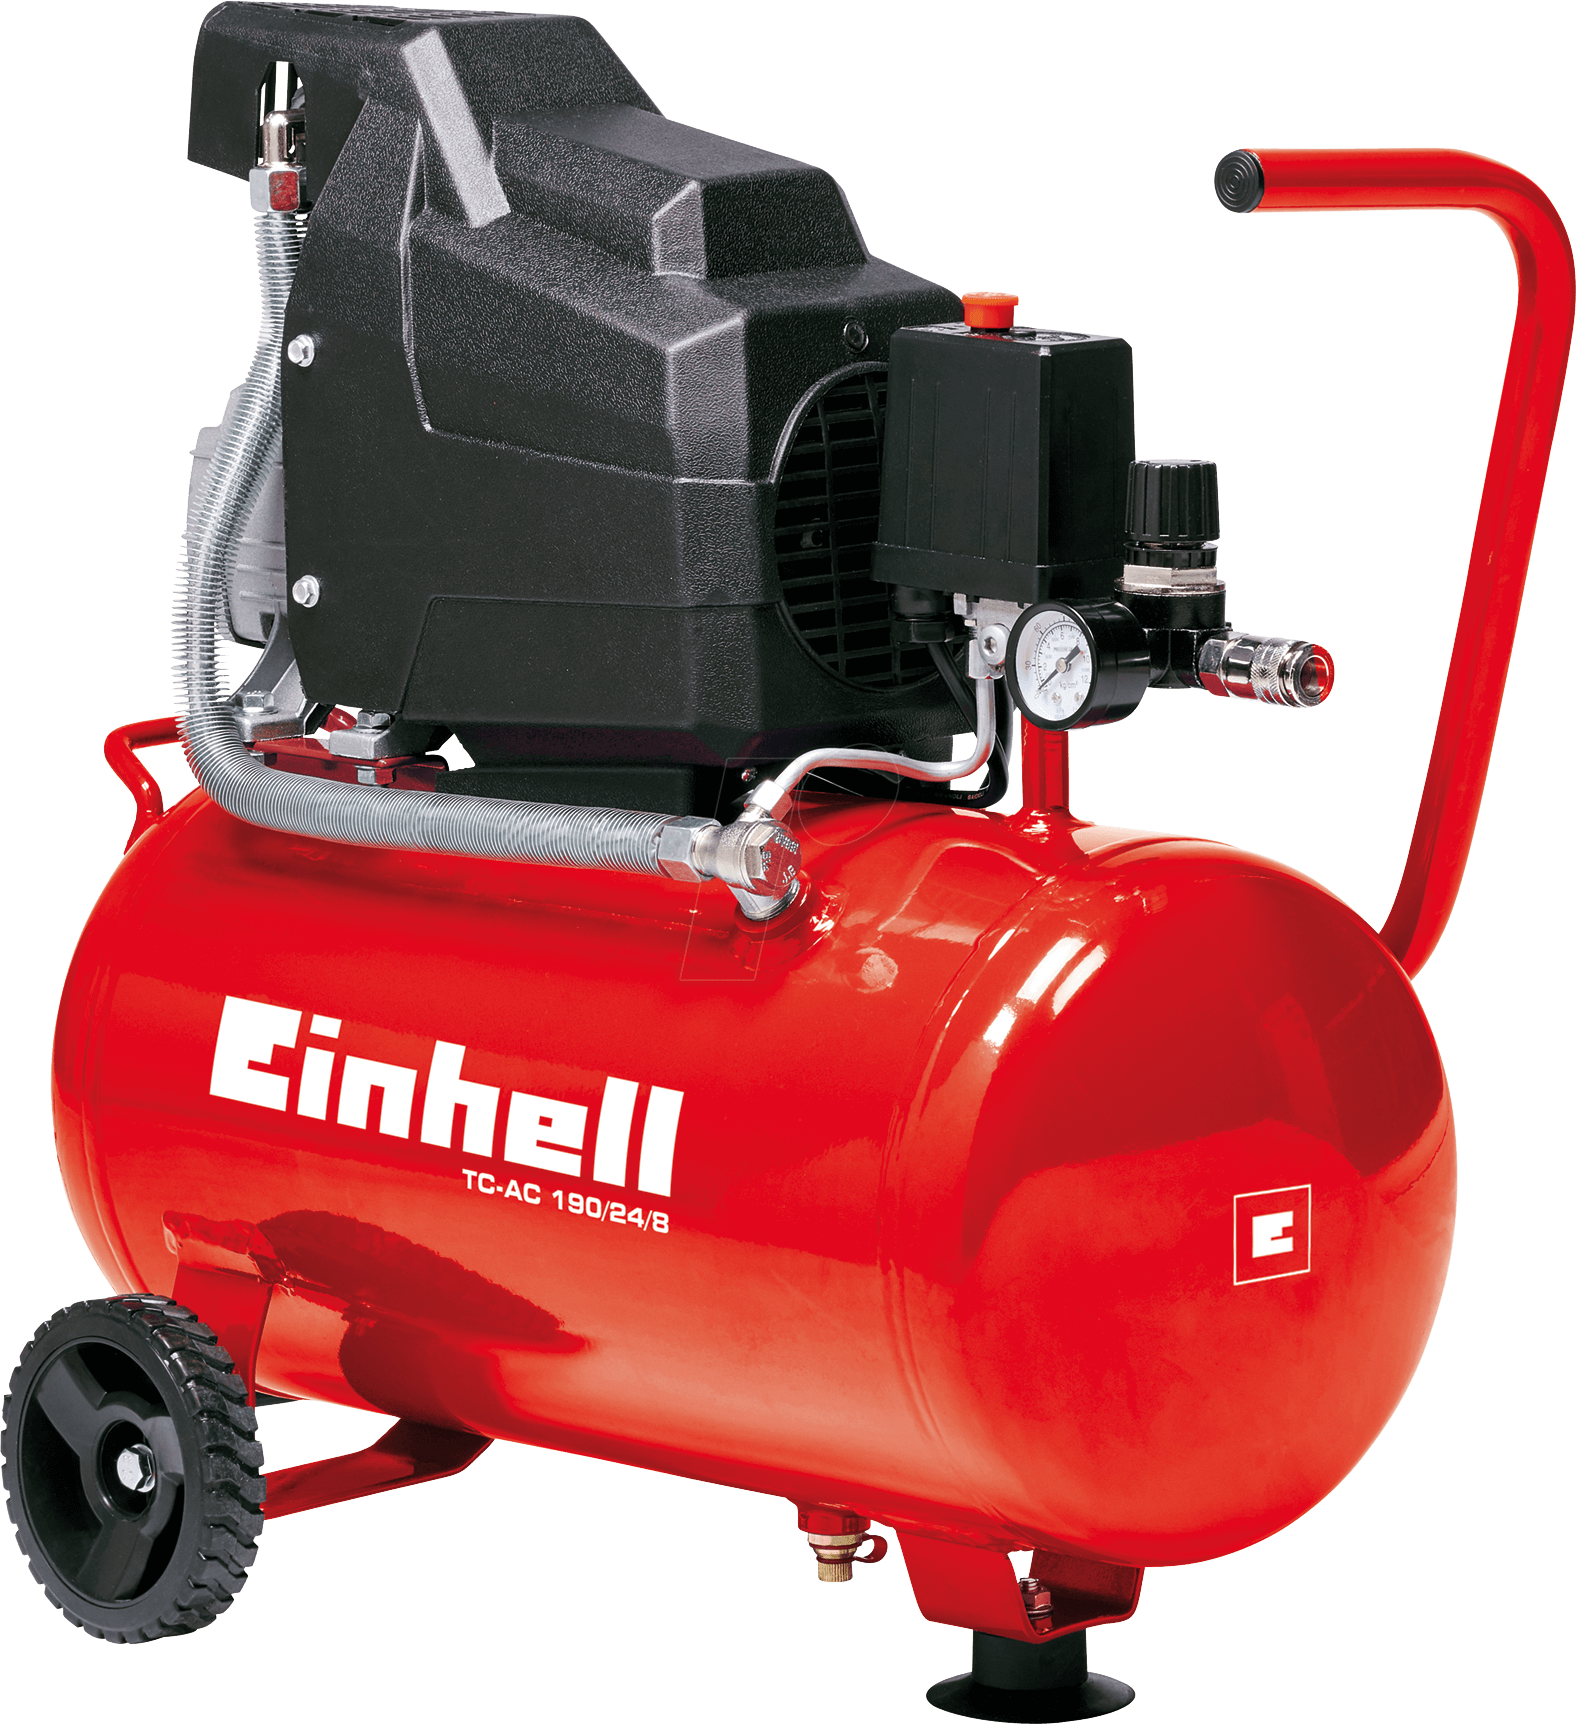 EINHELL 4007325 - Kompressor, 8 bar, 24 l, TC-AC 190/24/8 von Einhell